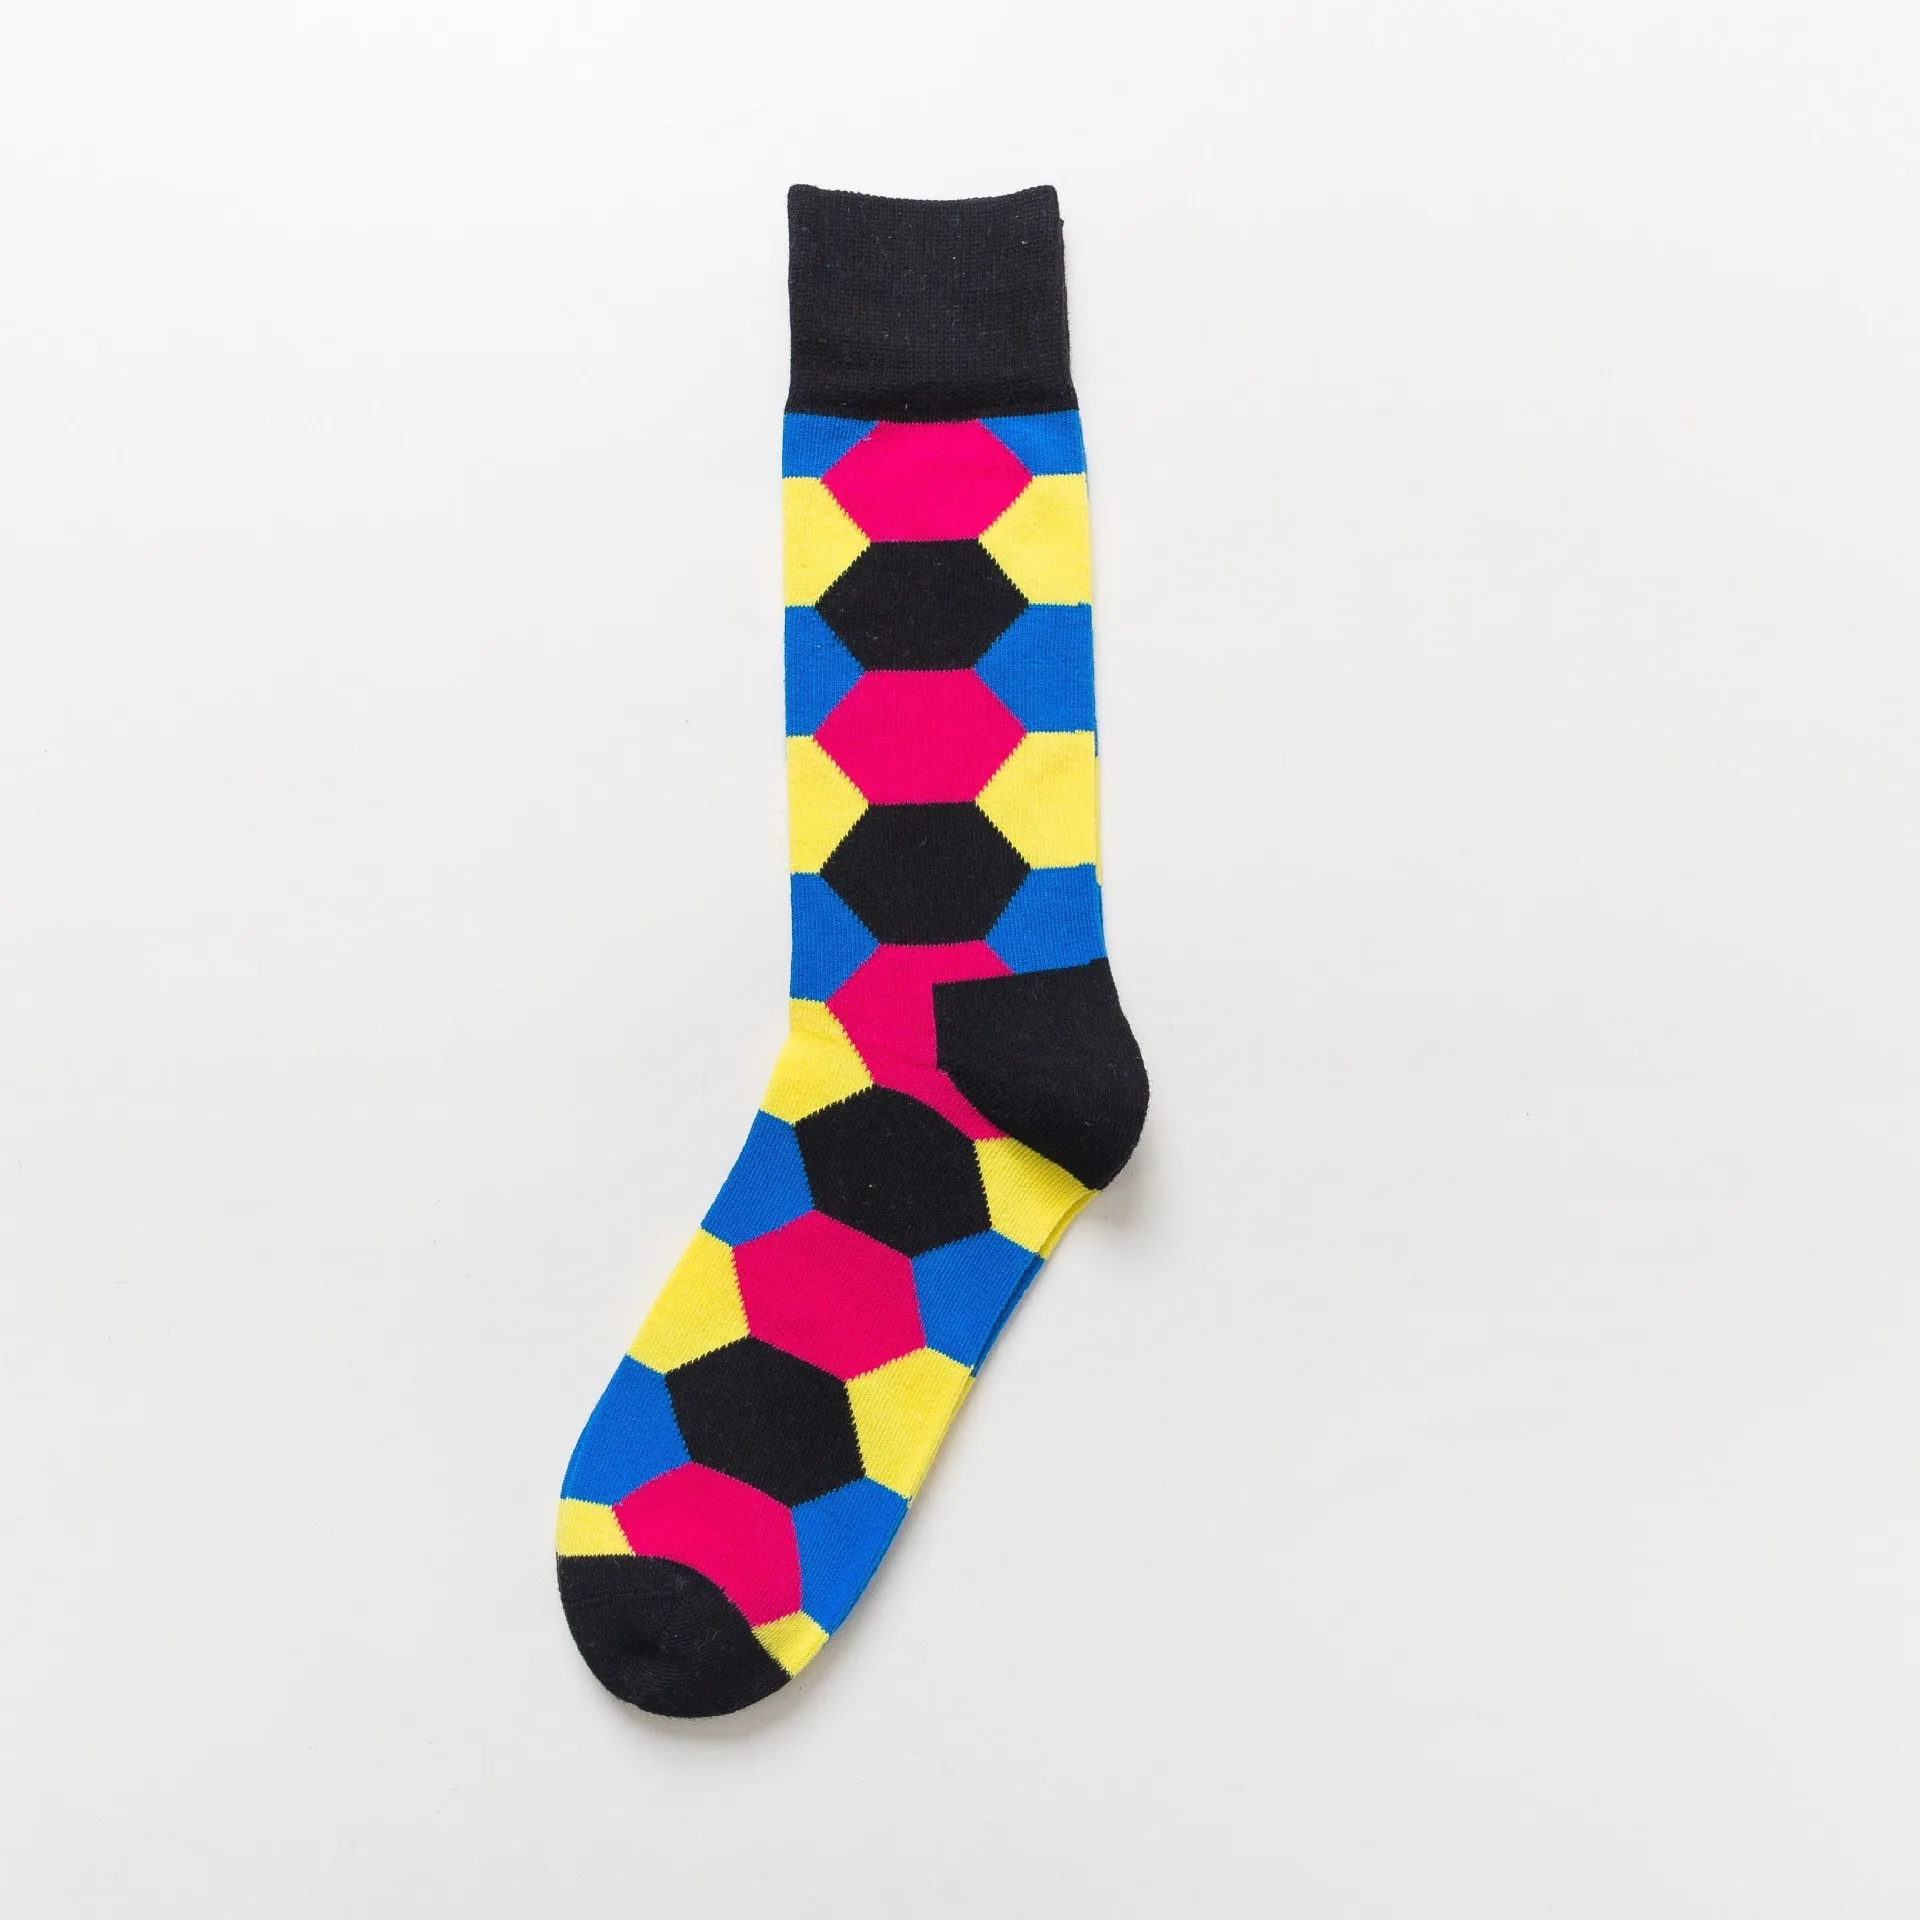 PEONFLY,, повседневные мужские носки, новые носки, модные, дизайнерские, в клетку, с геометрическим рисунком, цветные, счастливые, деловые, мужские хлопковые носки - Цвет: L5